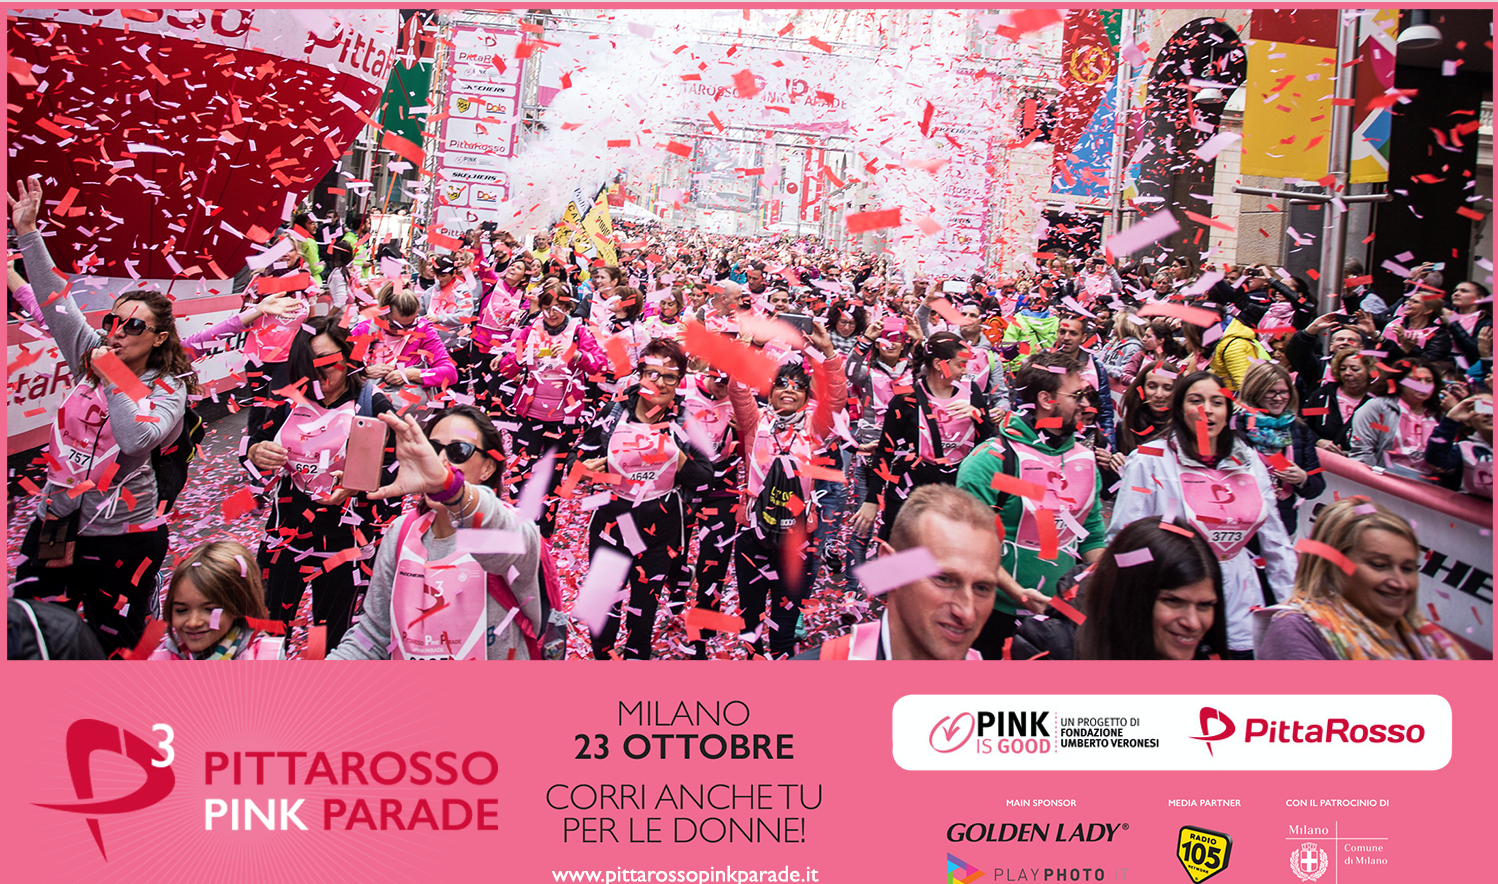 PittaRosso Pink Parade